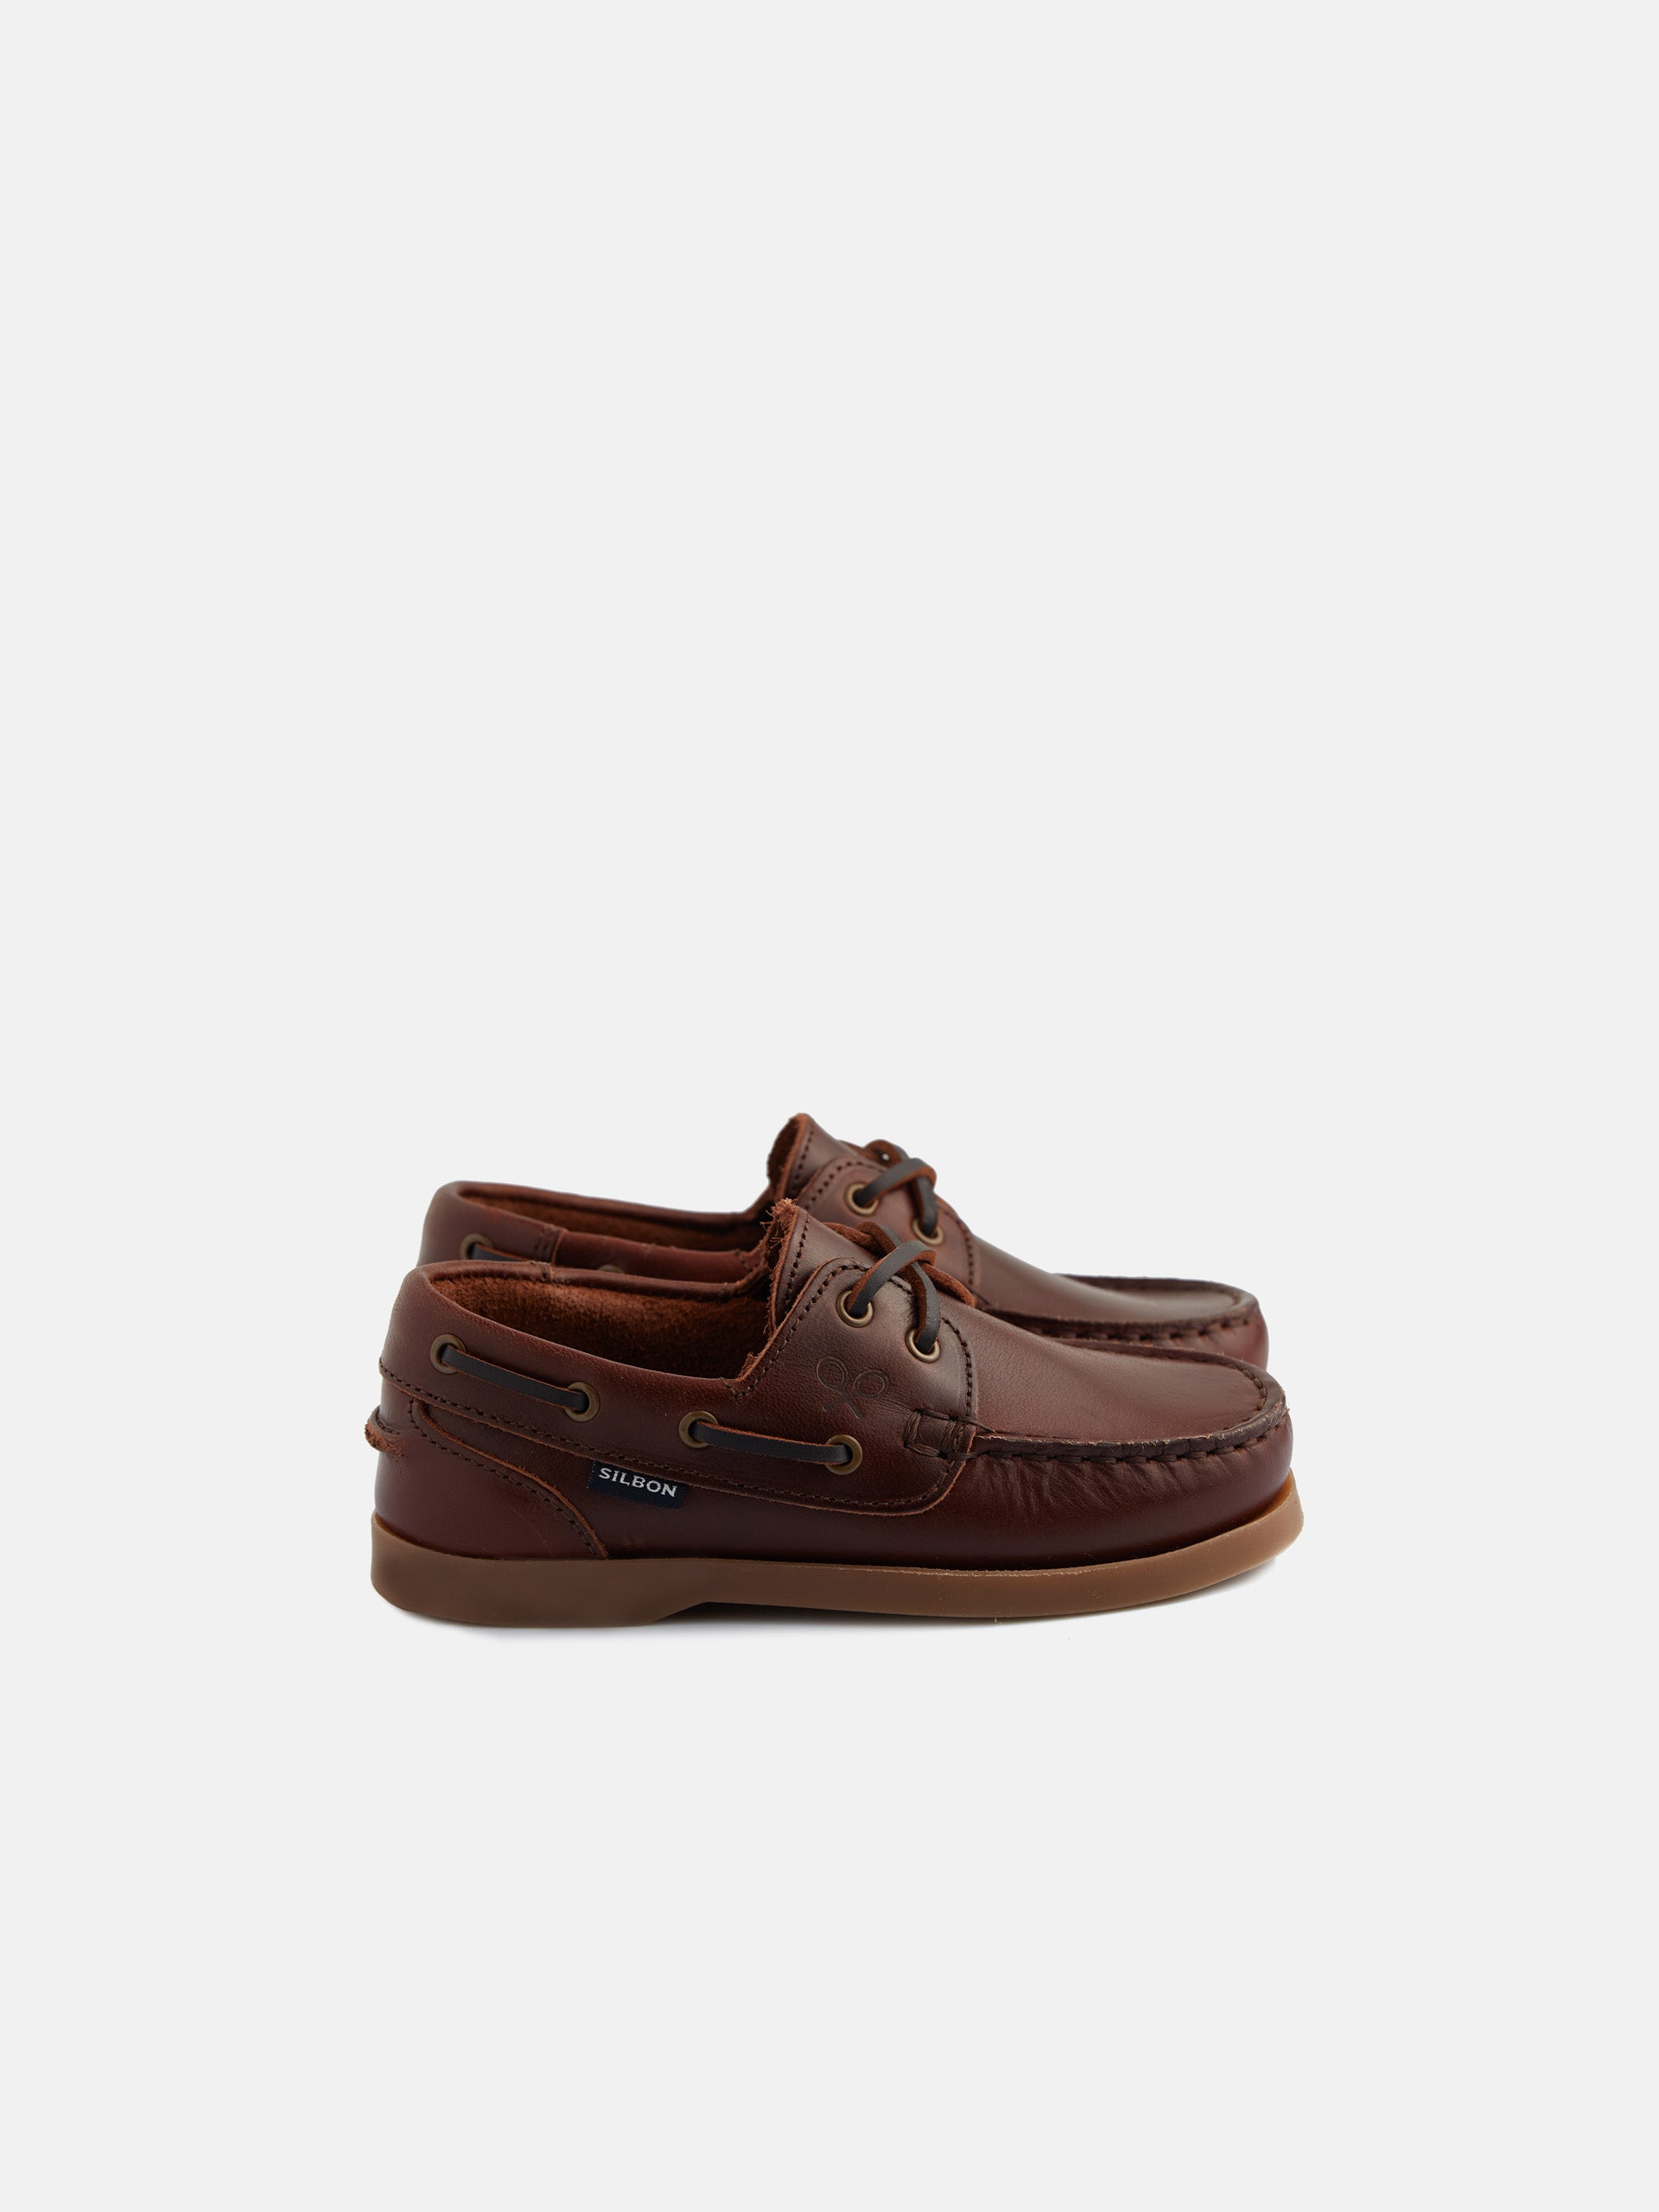 Zapato kids nautico brown